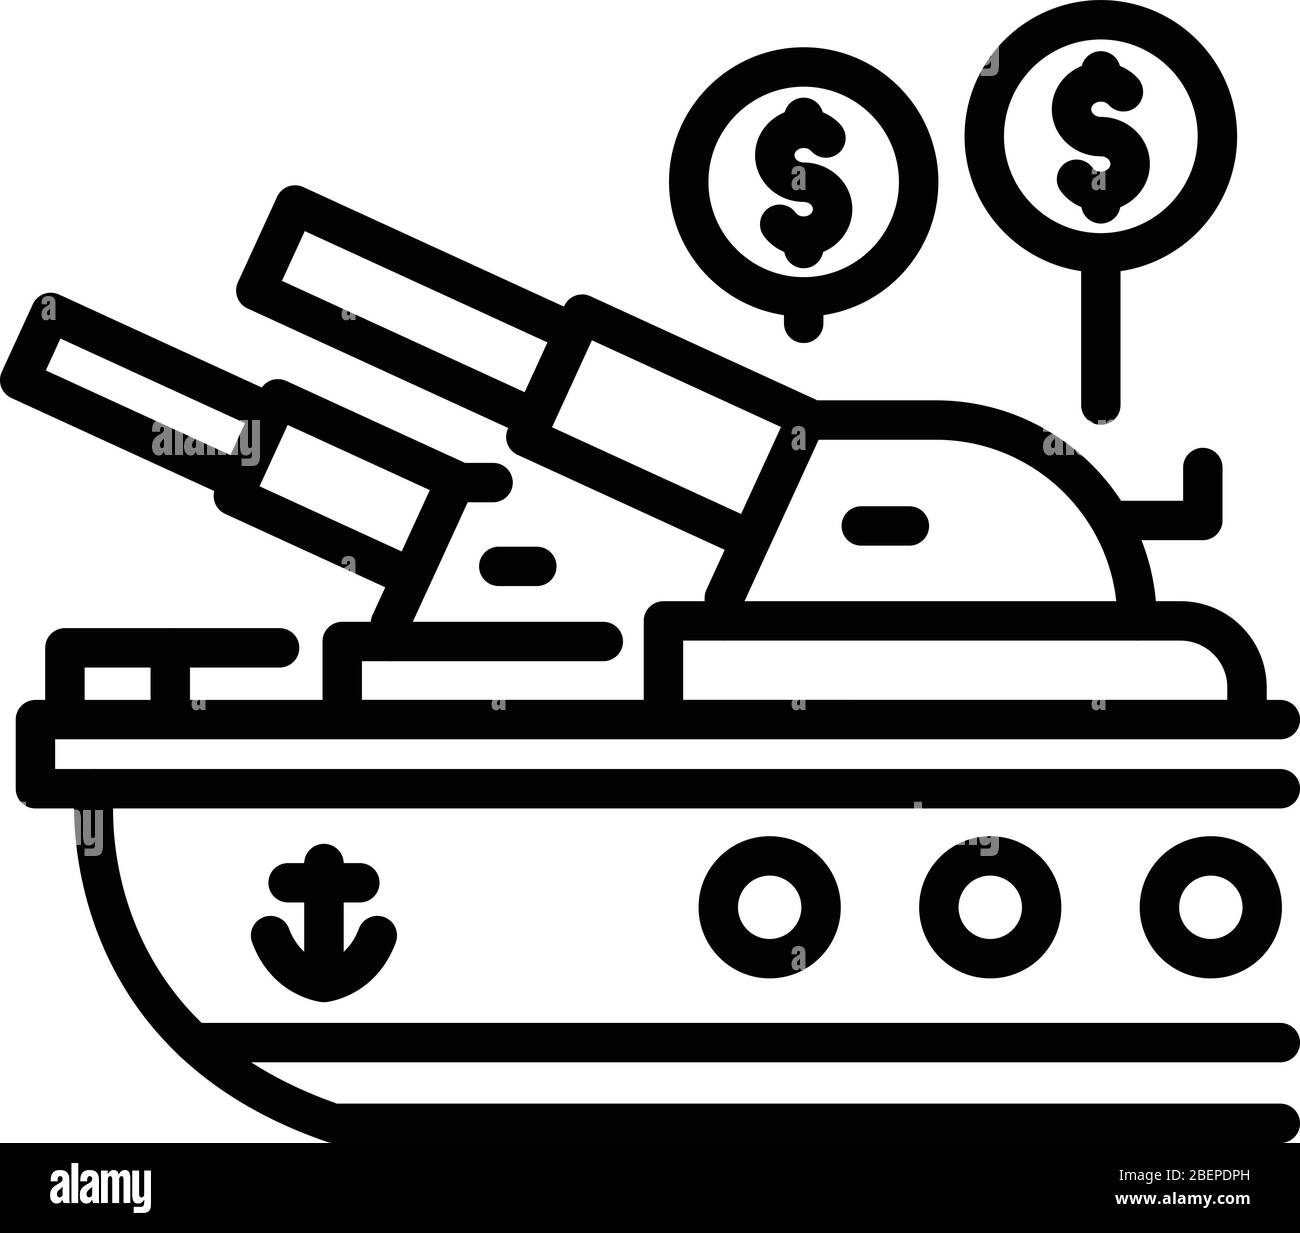 Trade war ship icon, outline style Stock Vector